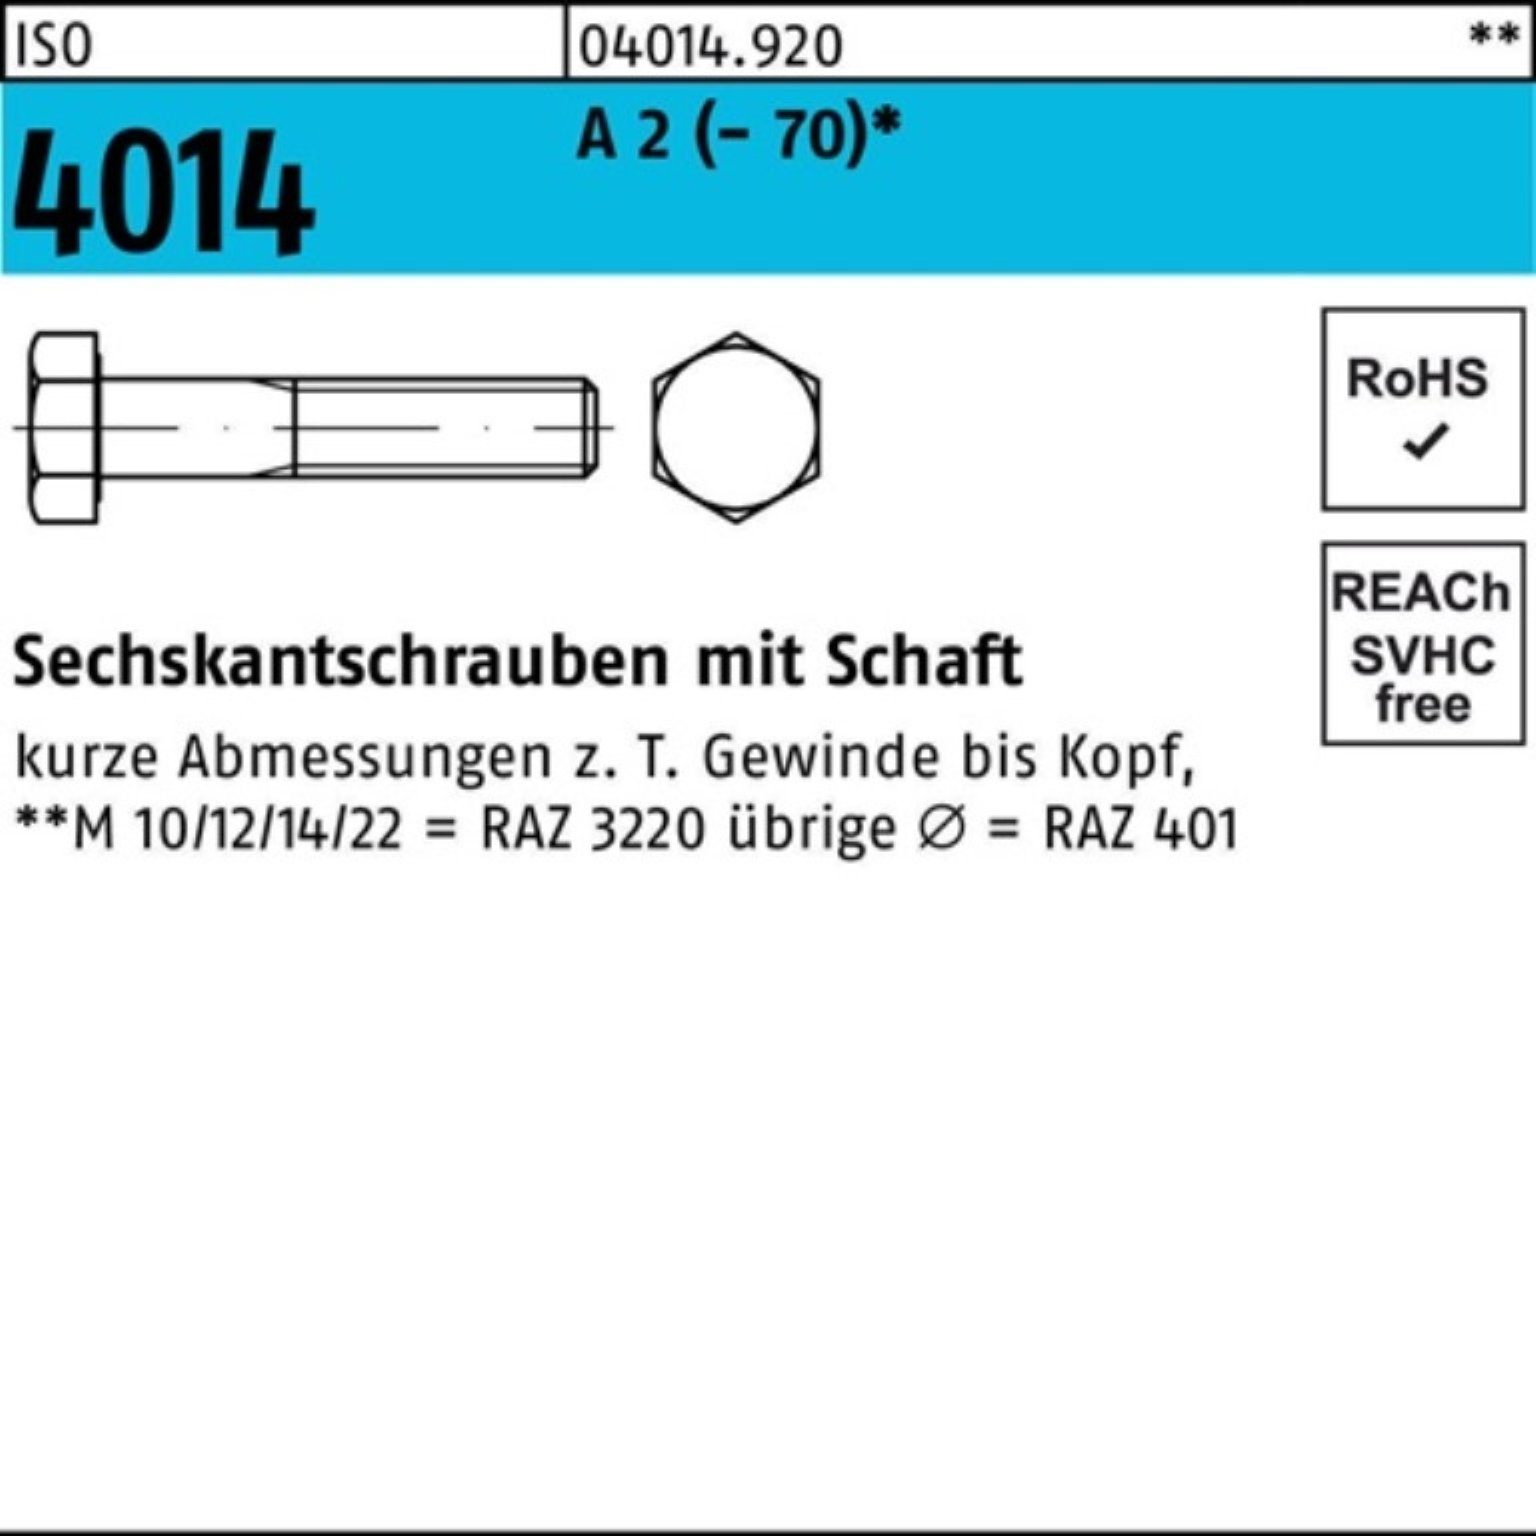 Bufab Sechskantschraube 100er Pack Sechskantschraube ISO 4014 Schaft M18x 110 A 2 (70) 25 St